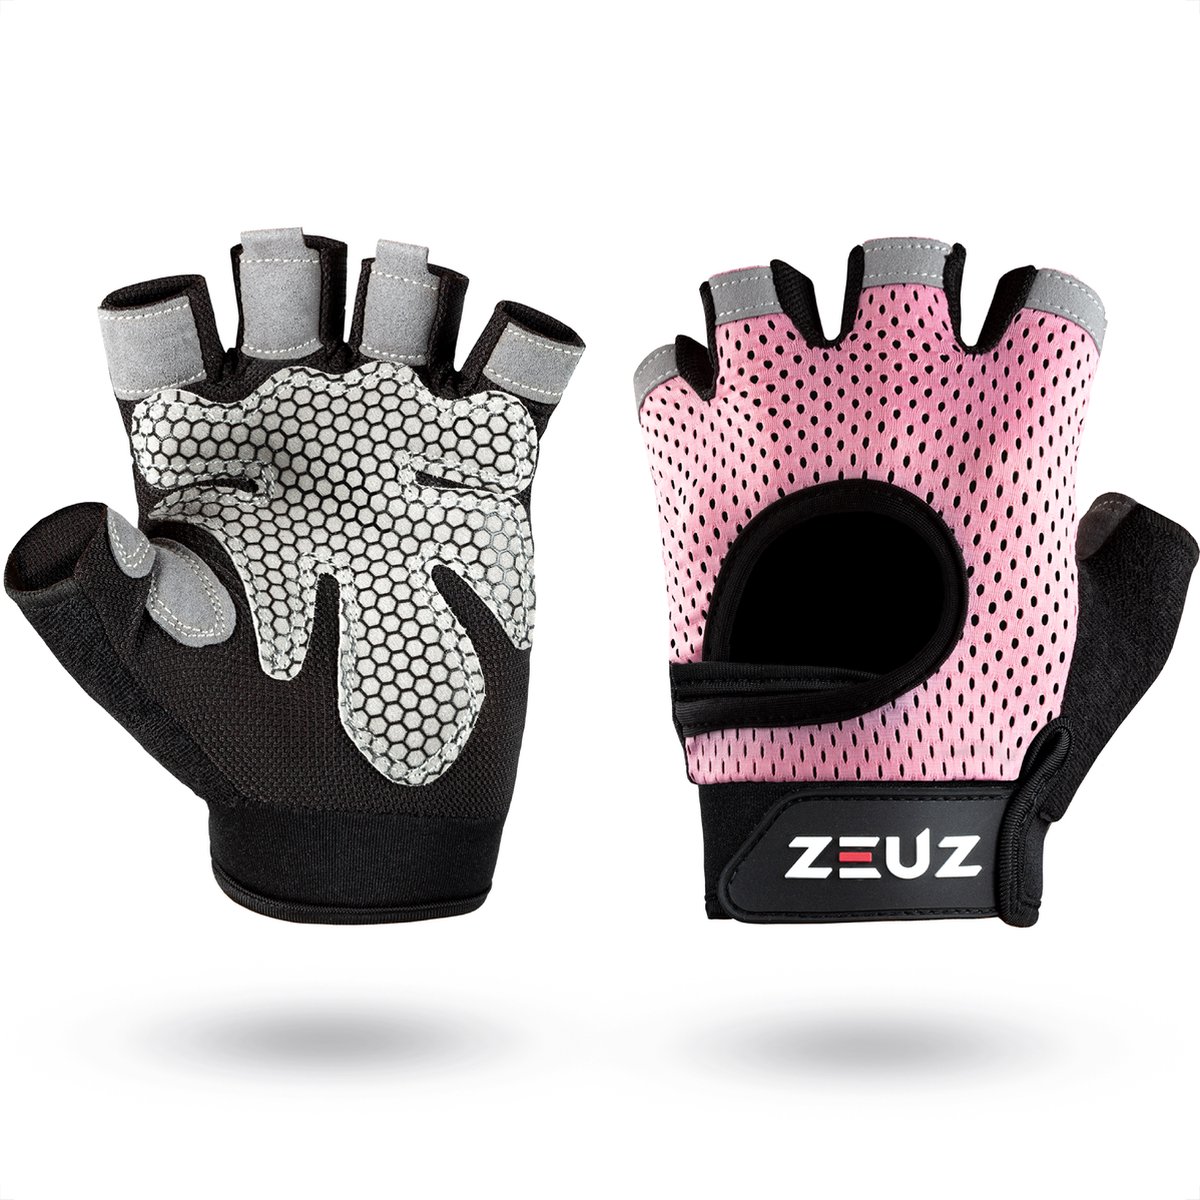 ZEUZ Sport & Fitness Handschoenen Dames – voor Krachttraining, Gym & CrossFit Training – Roze & Zwart – Gloves voor meer grip en bescherming tegen blaren & eelt - Maat M - ZEUZ